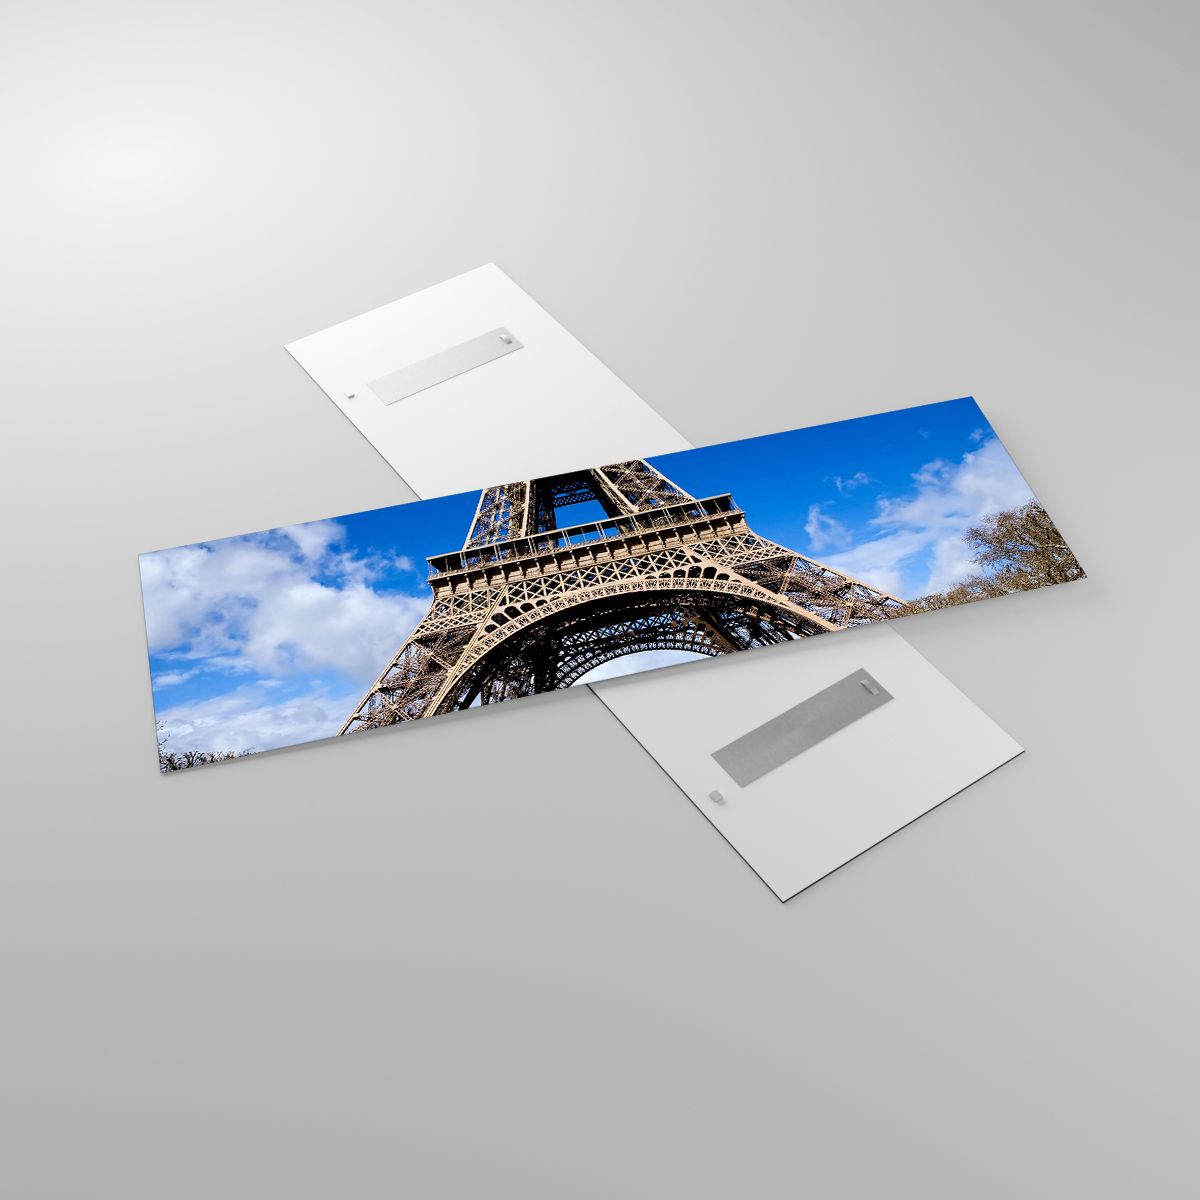 Glasbild Eiffelturm, Glasbild Paris, Glasbild Die Architektur, Glasbild Frankreich, Glasbild Stadt